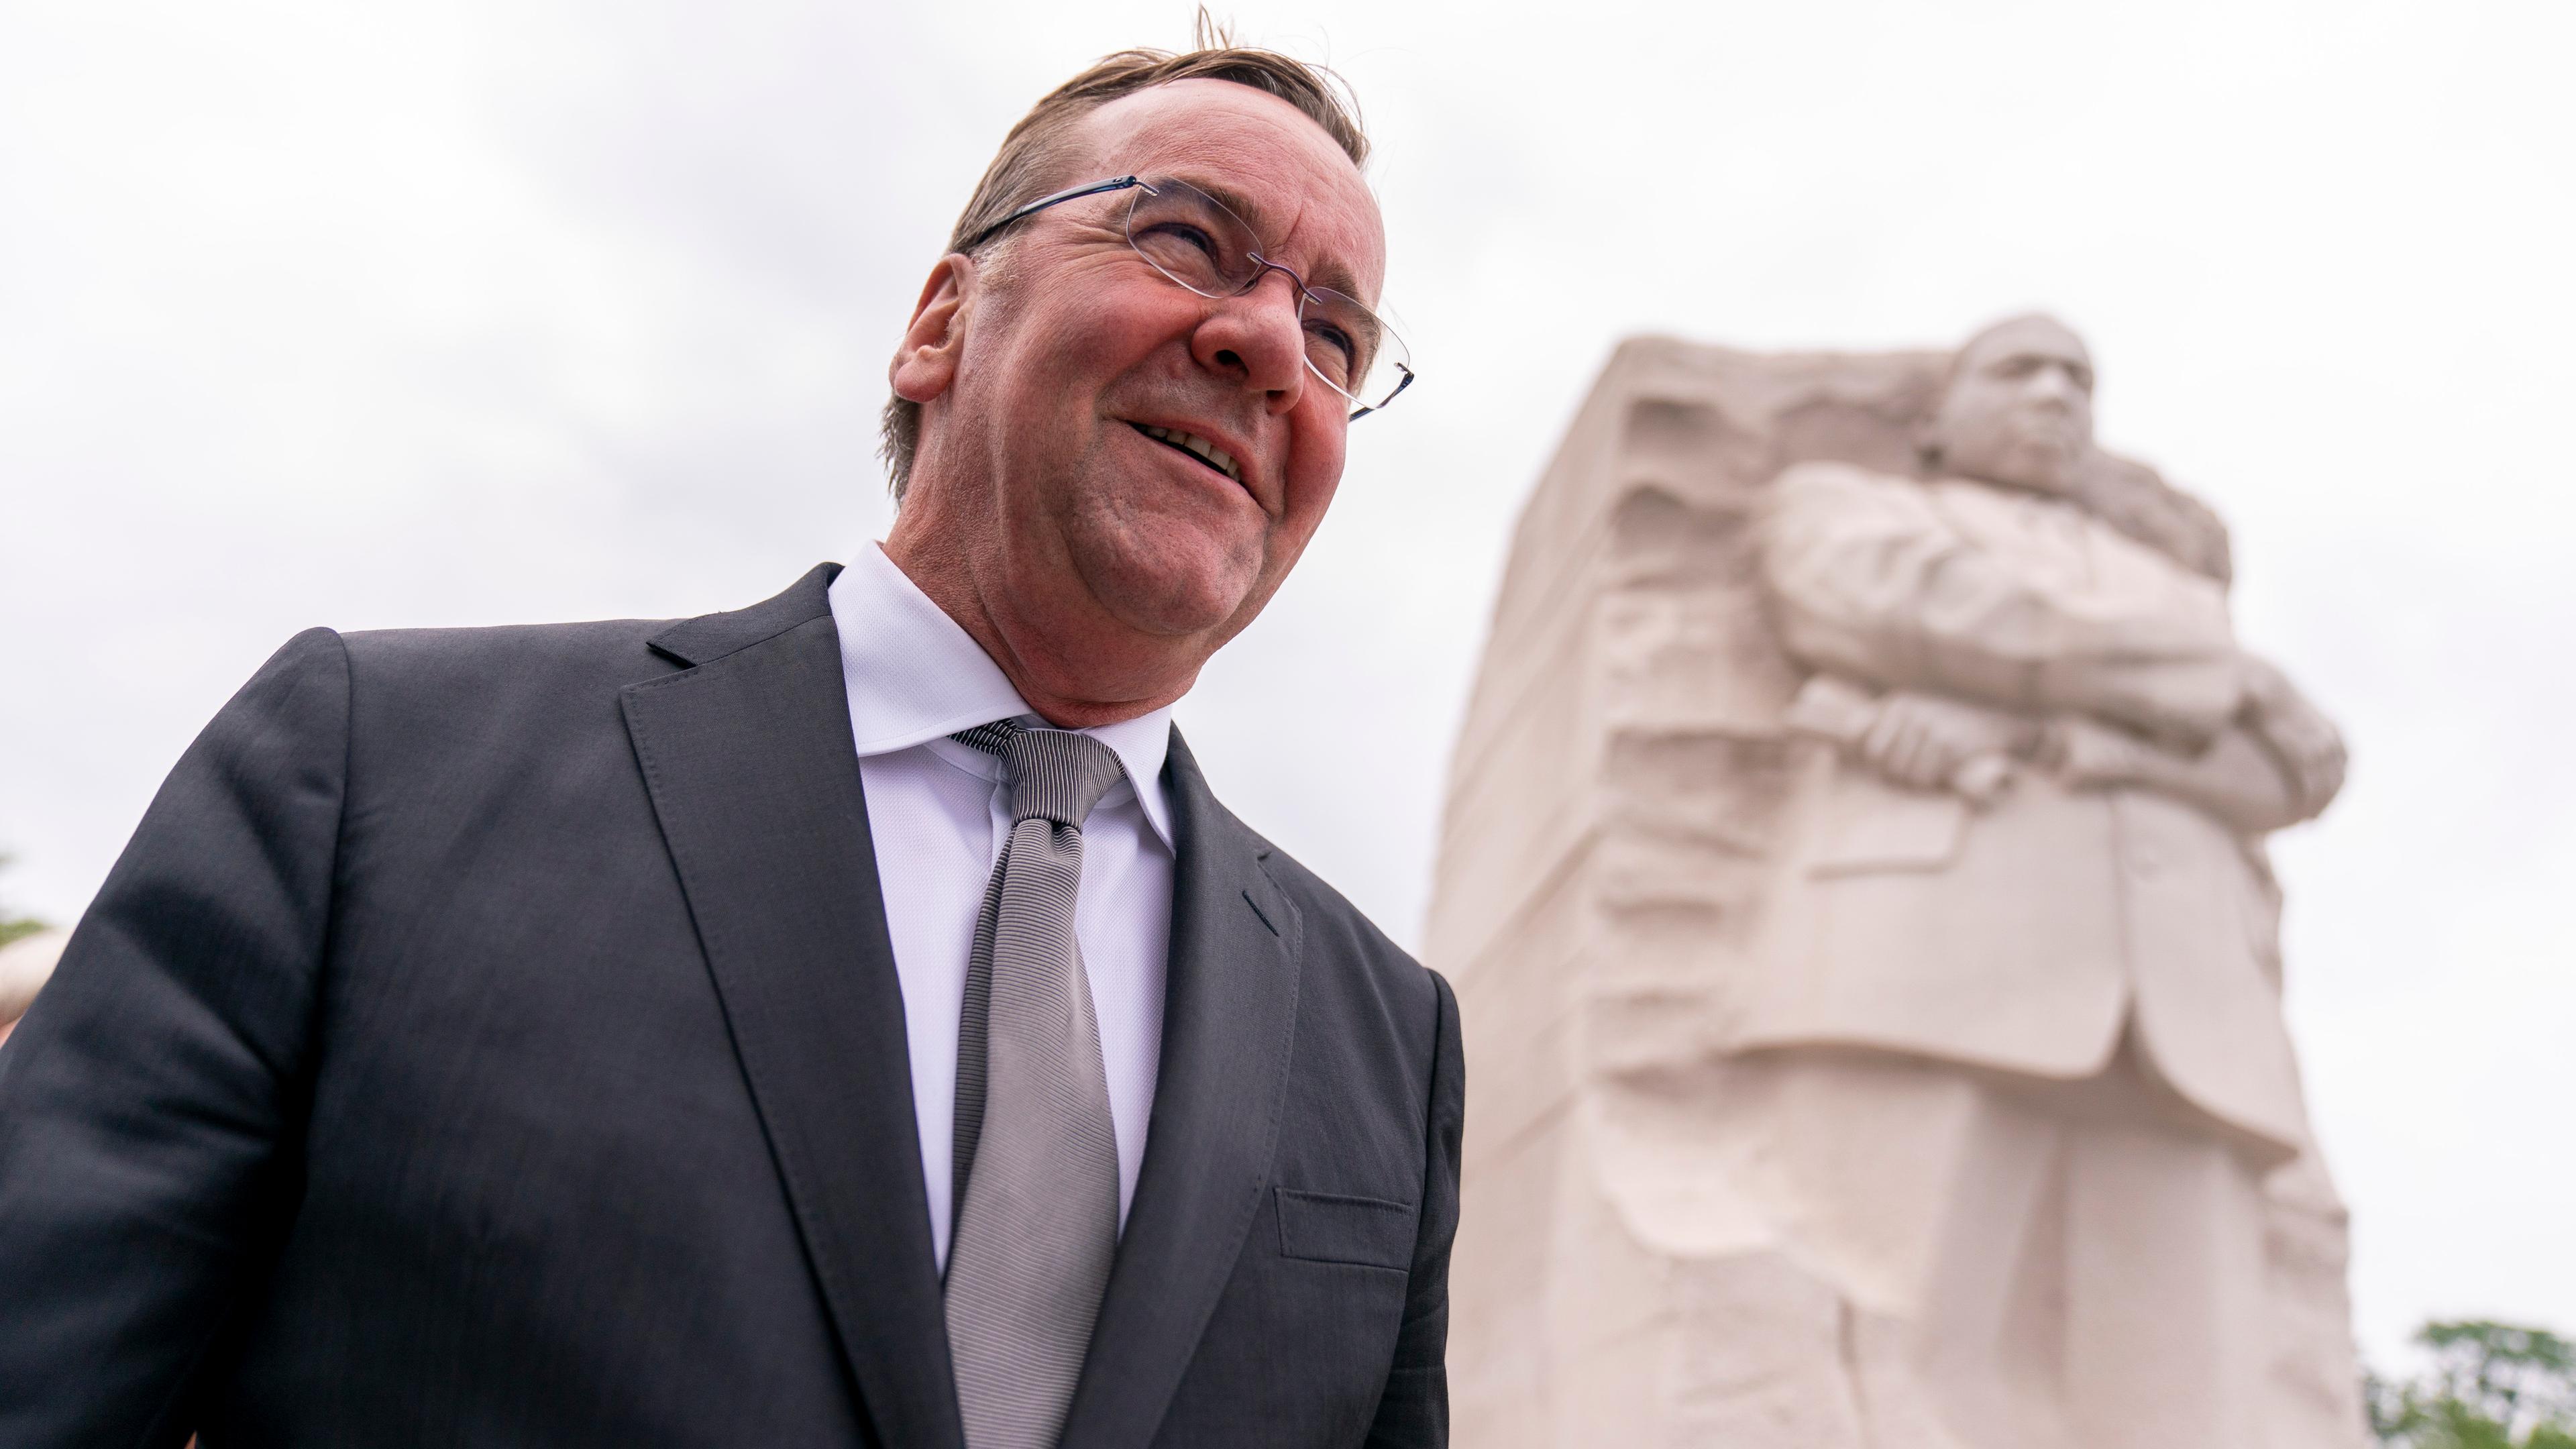 Der deutsche Bundesverteidigungsminsiter Pistoirus besucht das Martin LUther King Jr. Denkmal in Washington